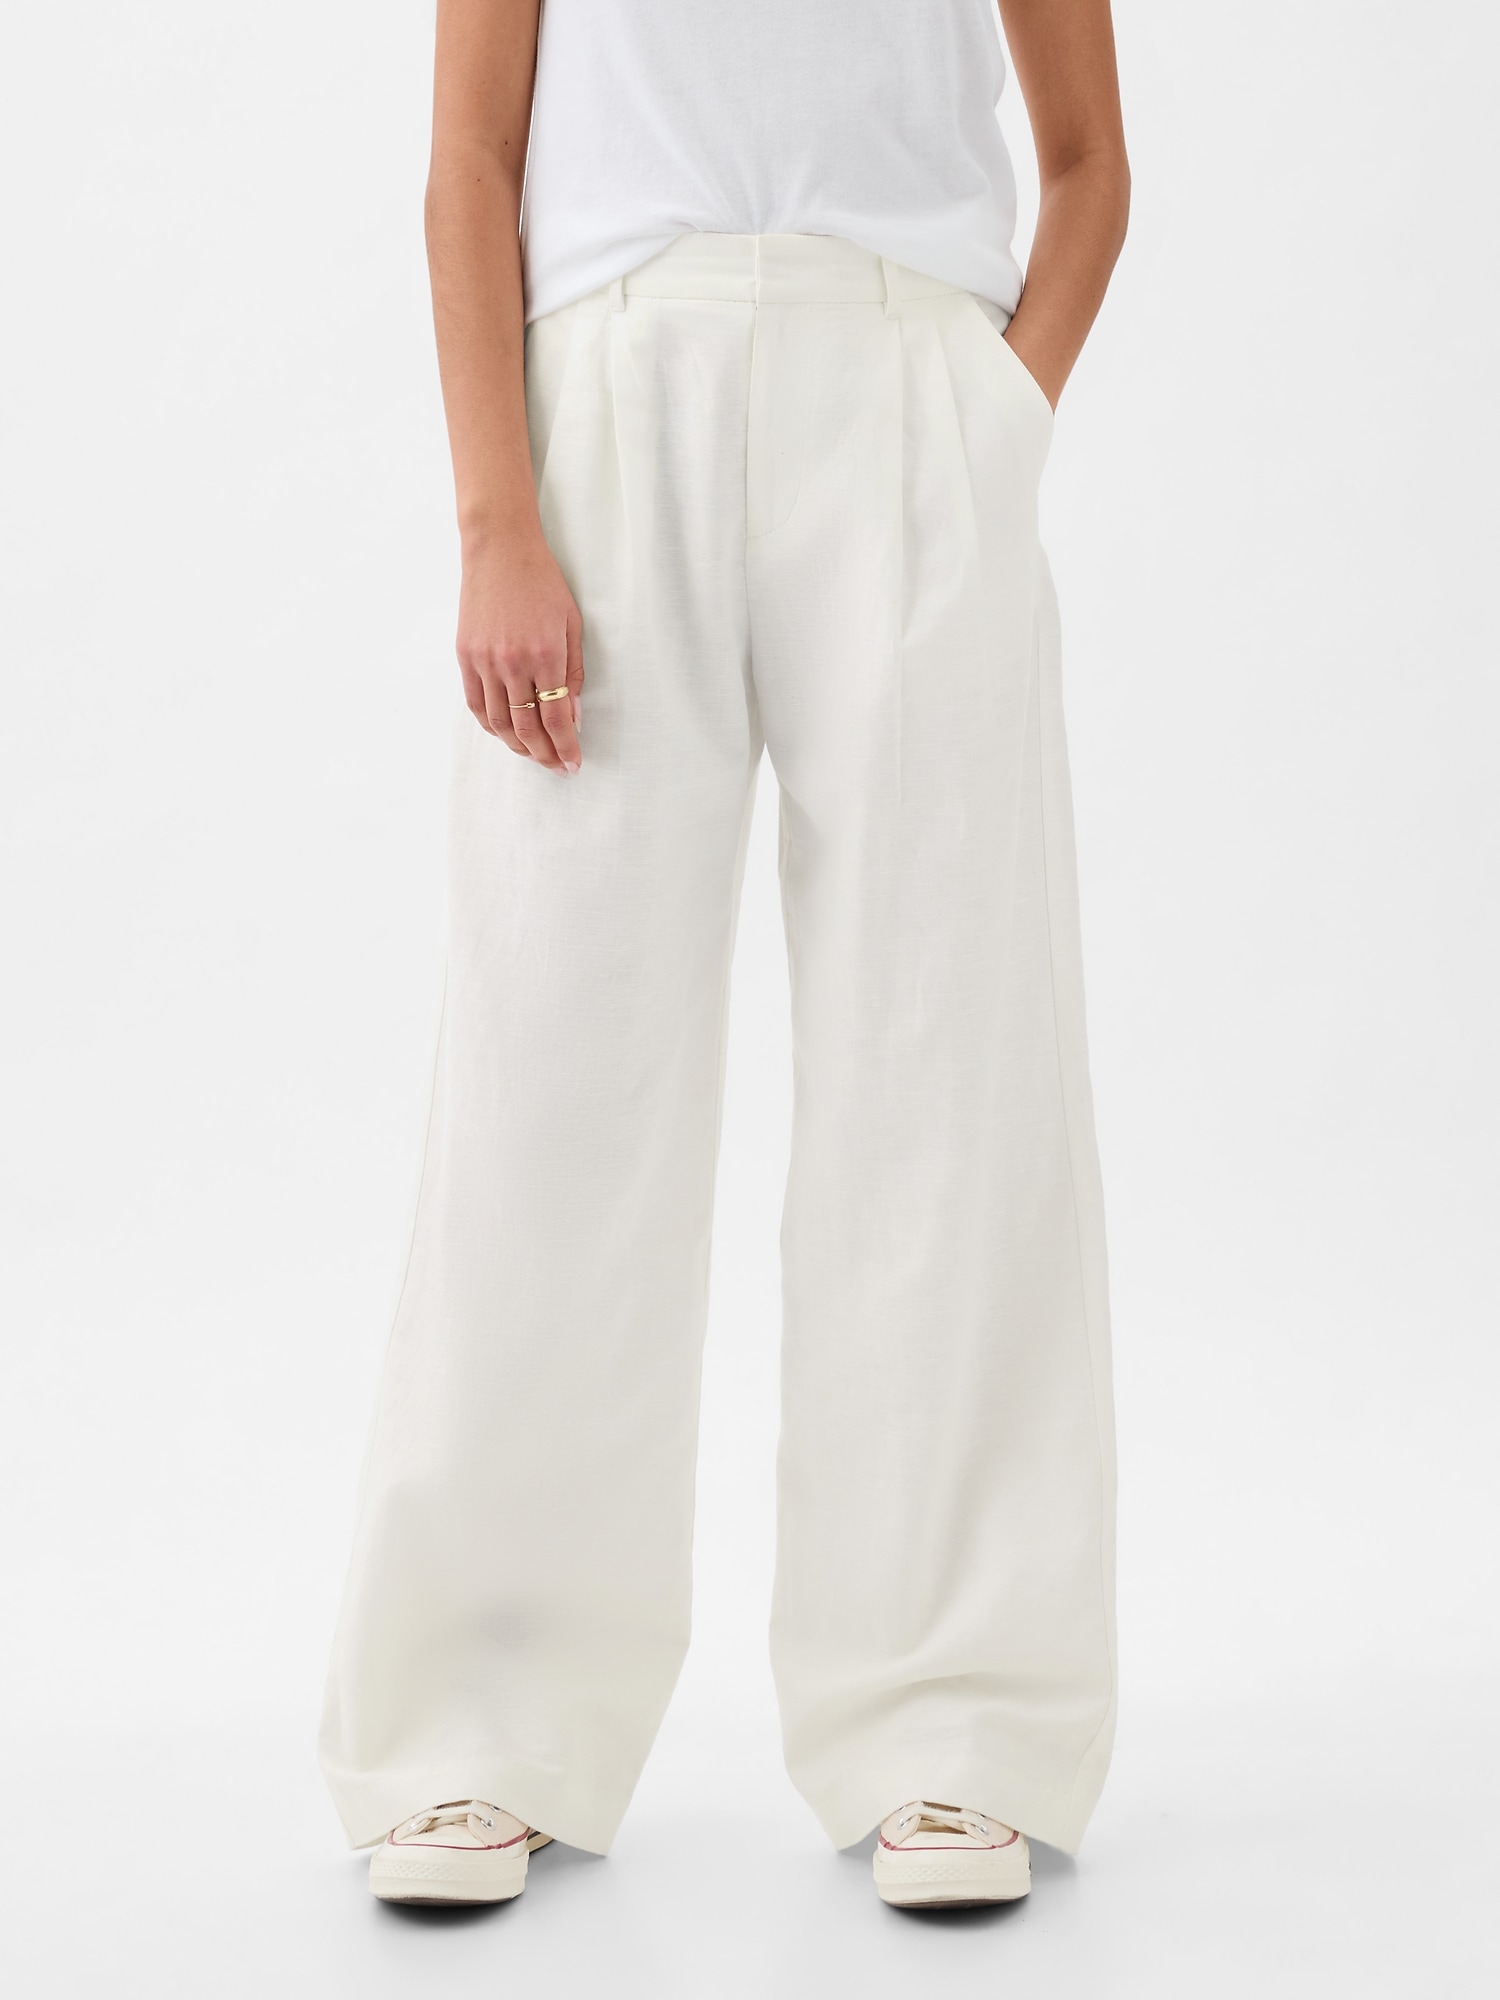 Fashion (Beige)Lucyever Summer Cotton Linen Pants Women High Waist